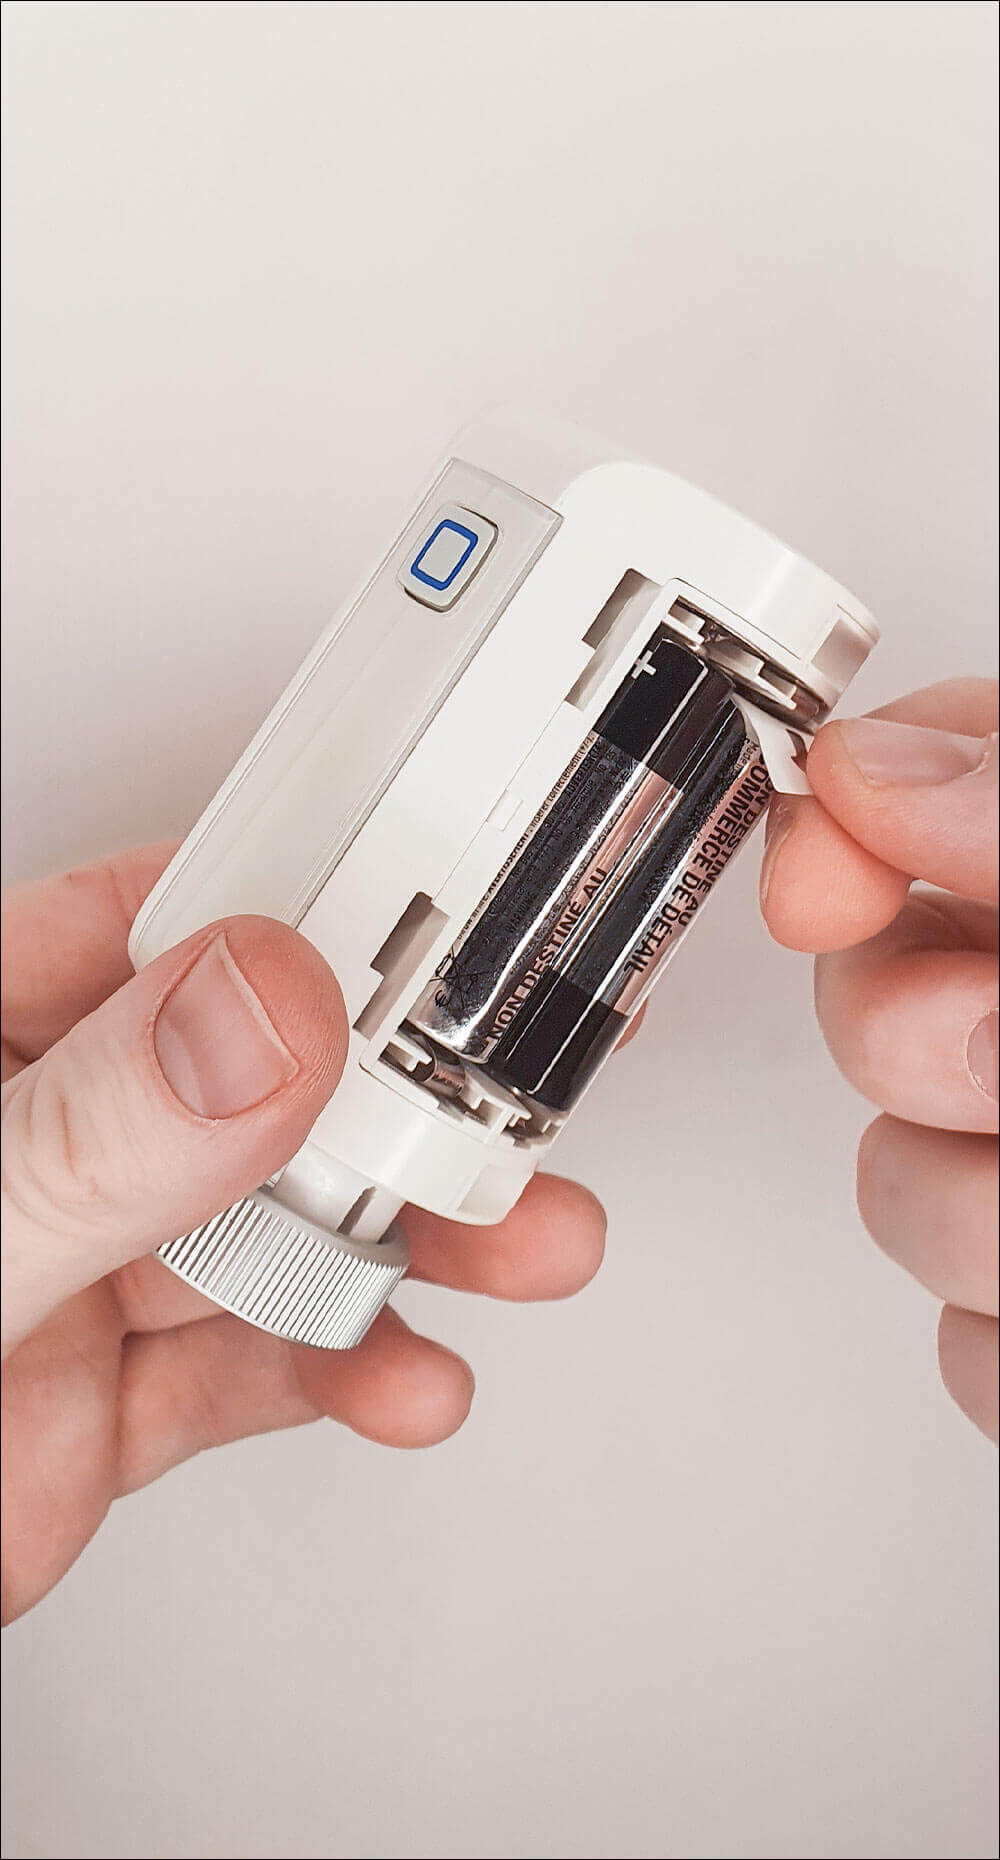 Bild 1: Öffnen Sie die Batteriefachabdeckung des Heizkörperthermostats und aktivieren Sie den Heizungsregler durch Entfernen des Isolationsstreifens im Batteriefach.